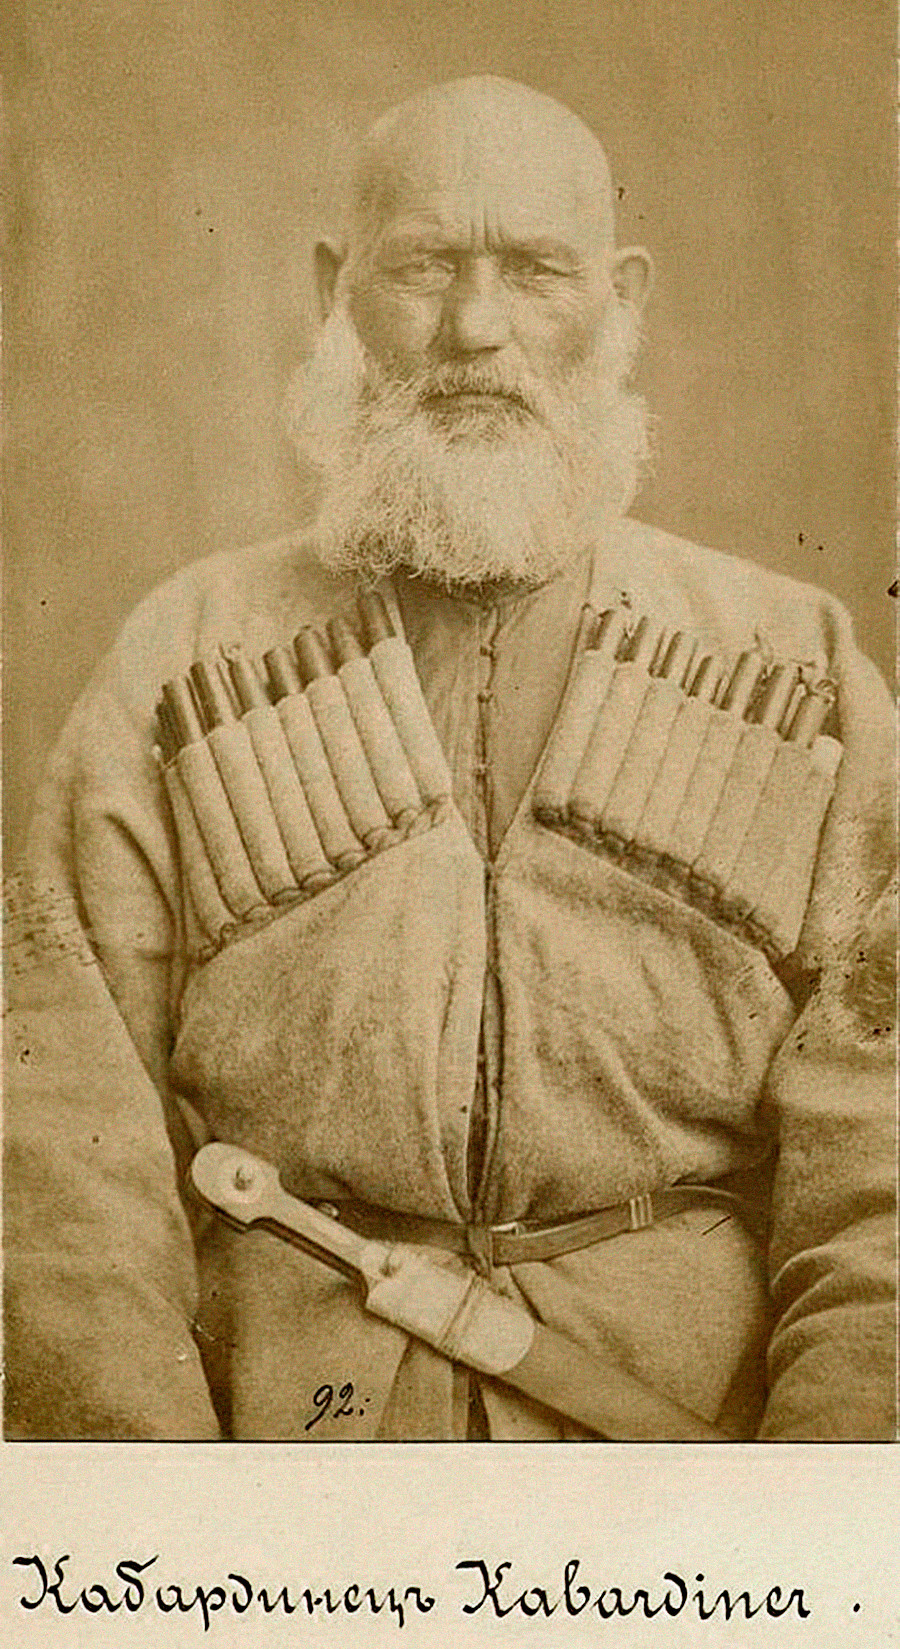 カバルダ人、カバルダ（現カバルダ・バルカル共和国）、19世紀末